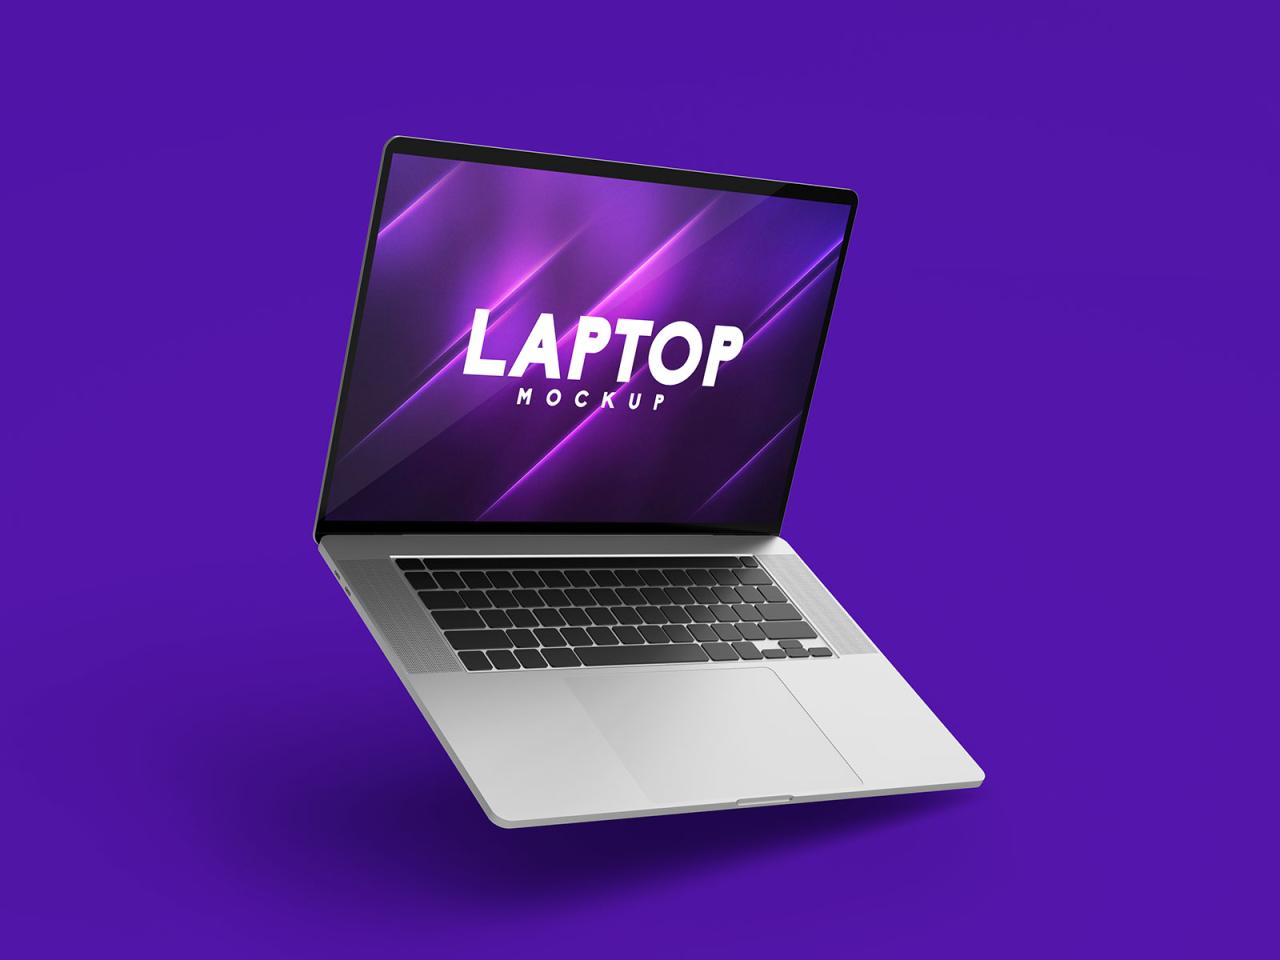 Laptop Mockup Free